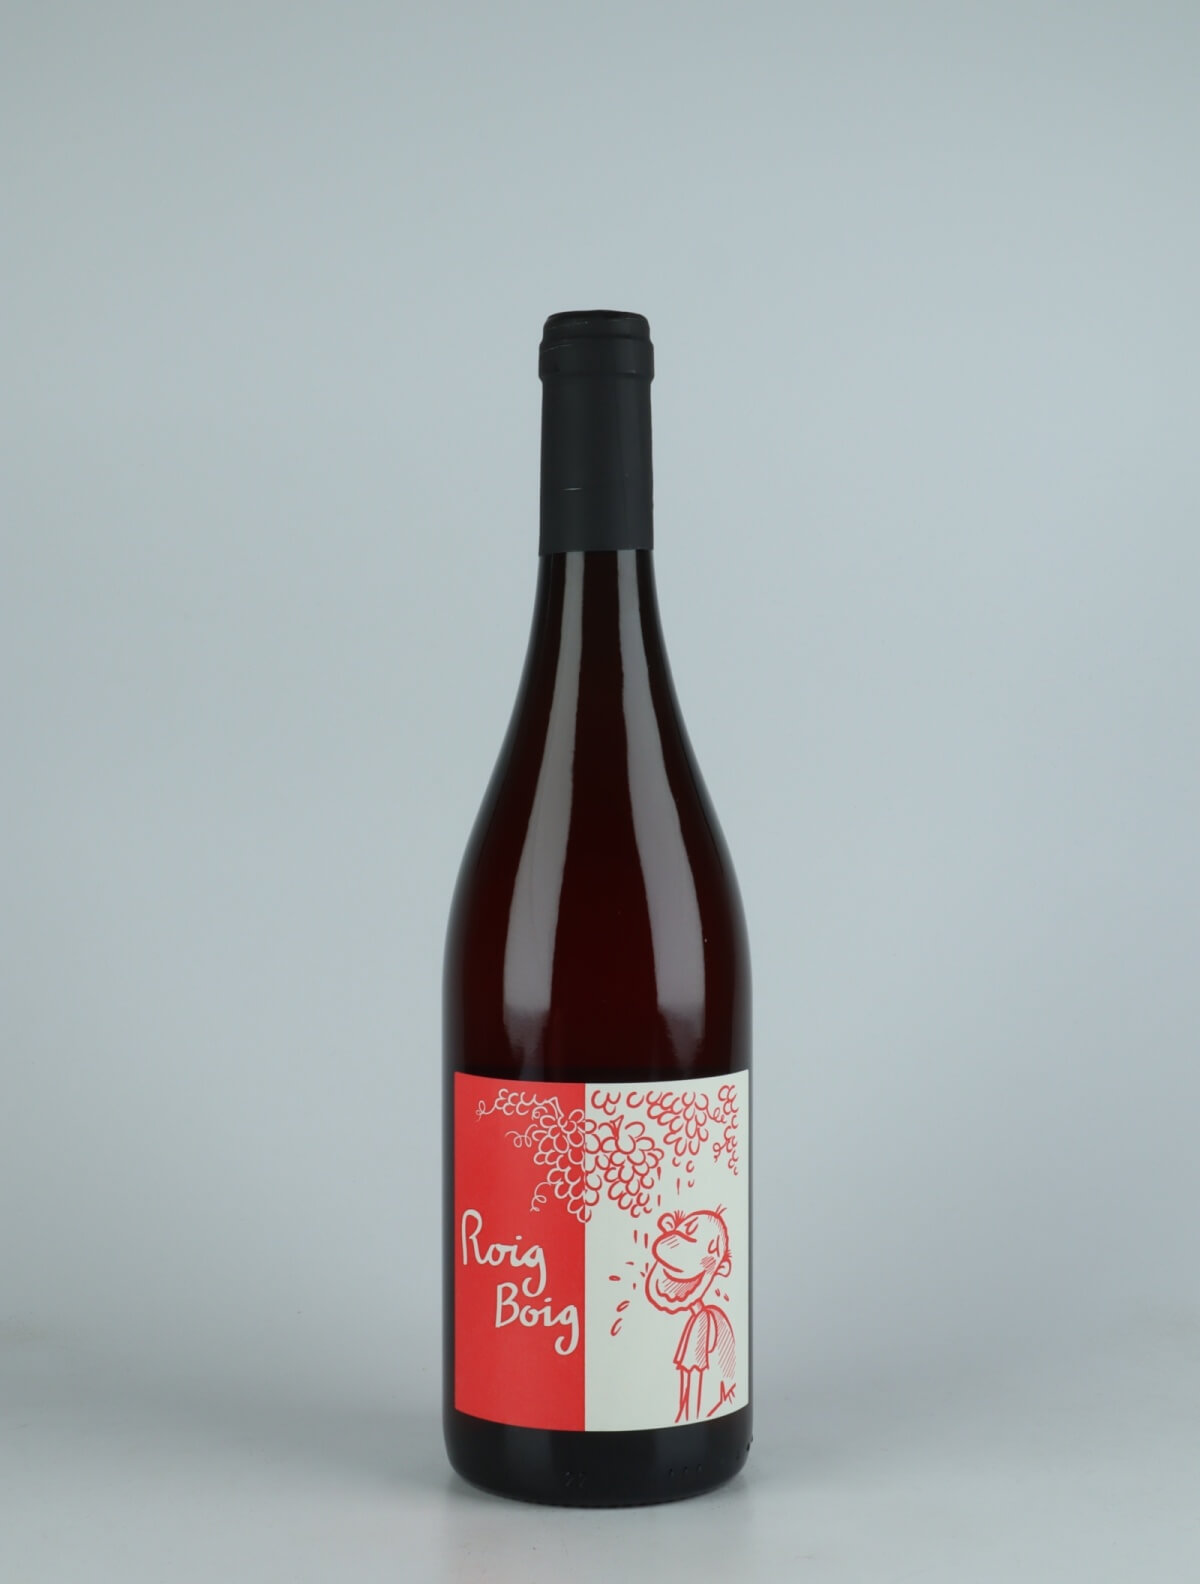 En flaske 2021 Roig Boig  - Tranquil Rosé fra Celler la Salada, Penedès i Spanien